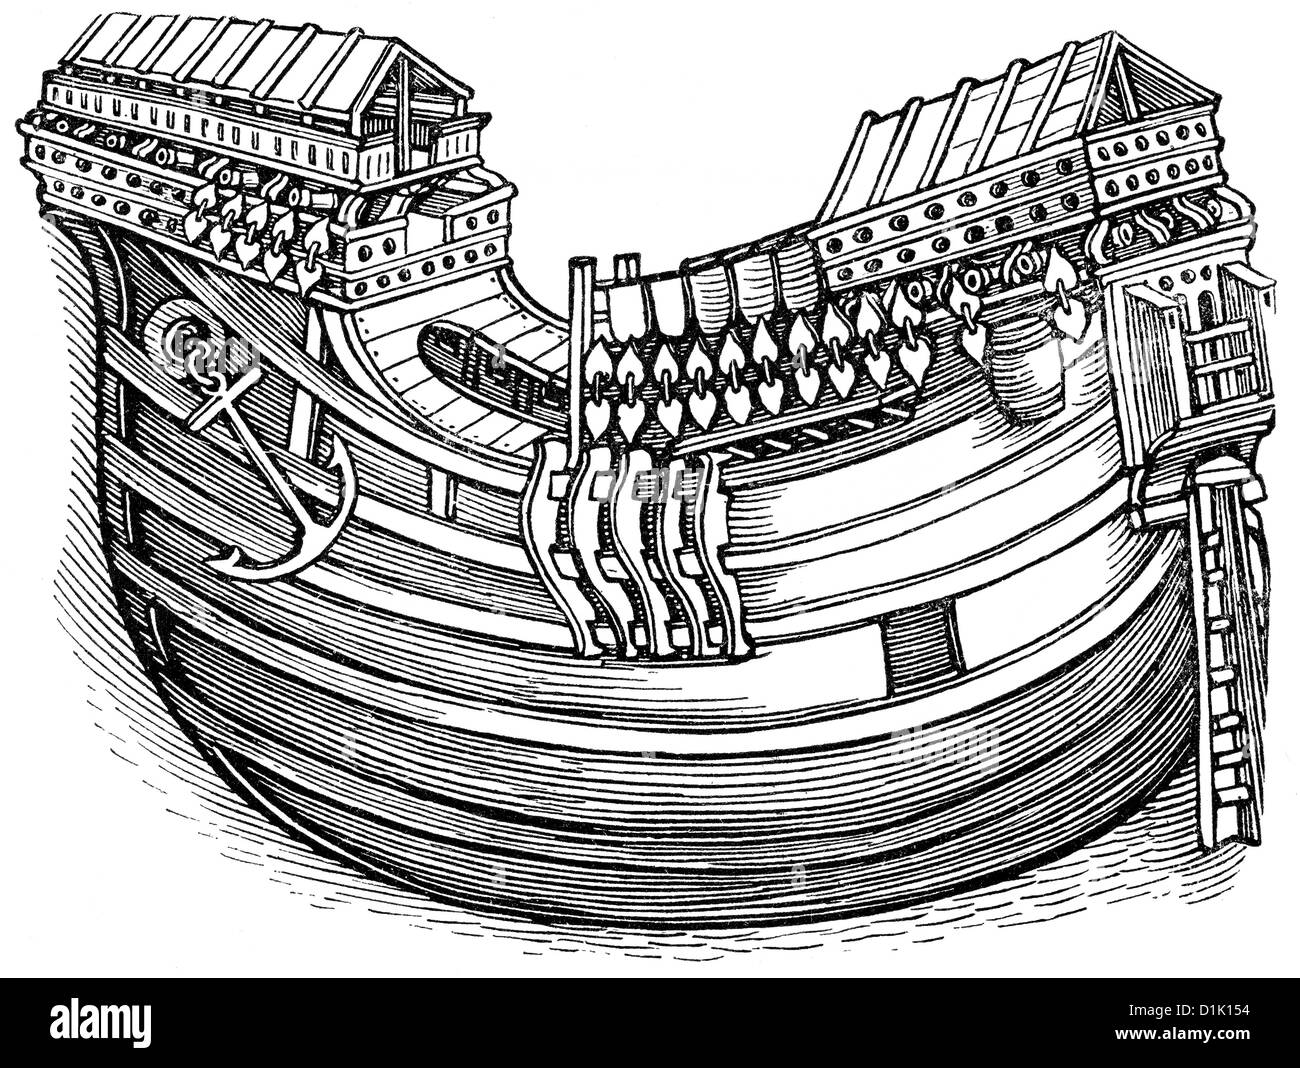 Historische Zeichnung der Rumpf eines Schiffes, Schiff von einer ostindischen Explorer, ein Schiff der niederländischen Ostindien-Kompanie, 16. Jahrhundert, Stockfoto